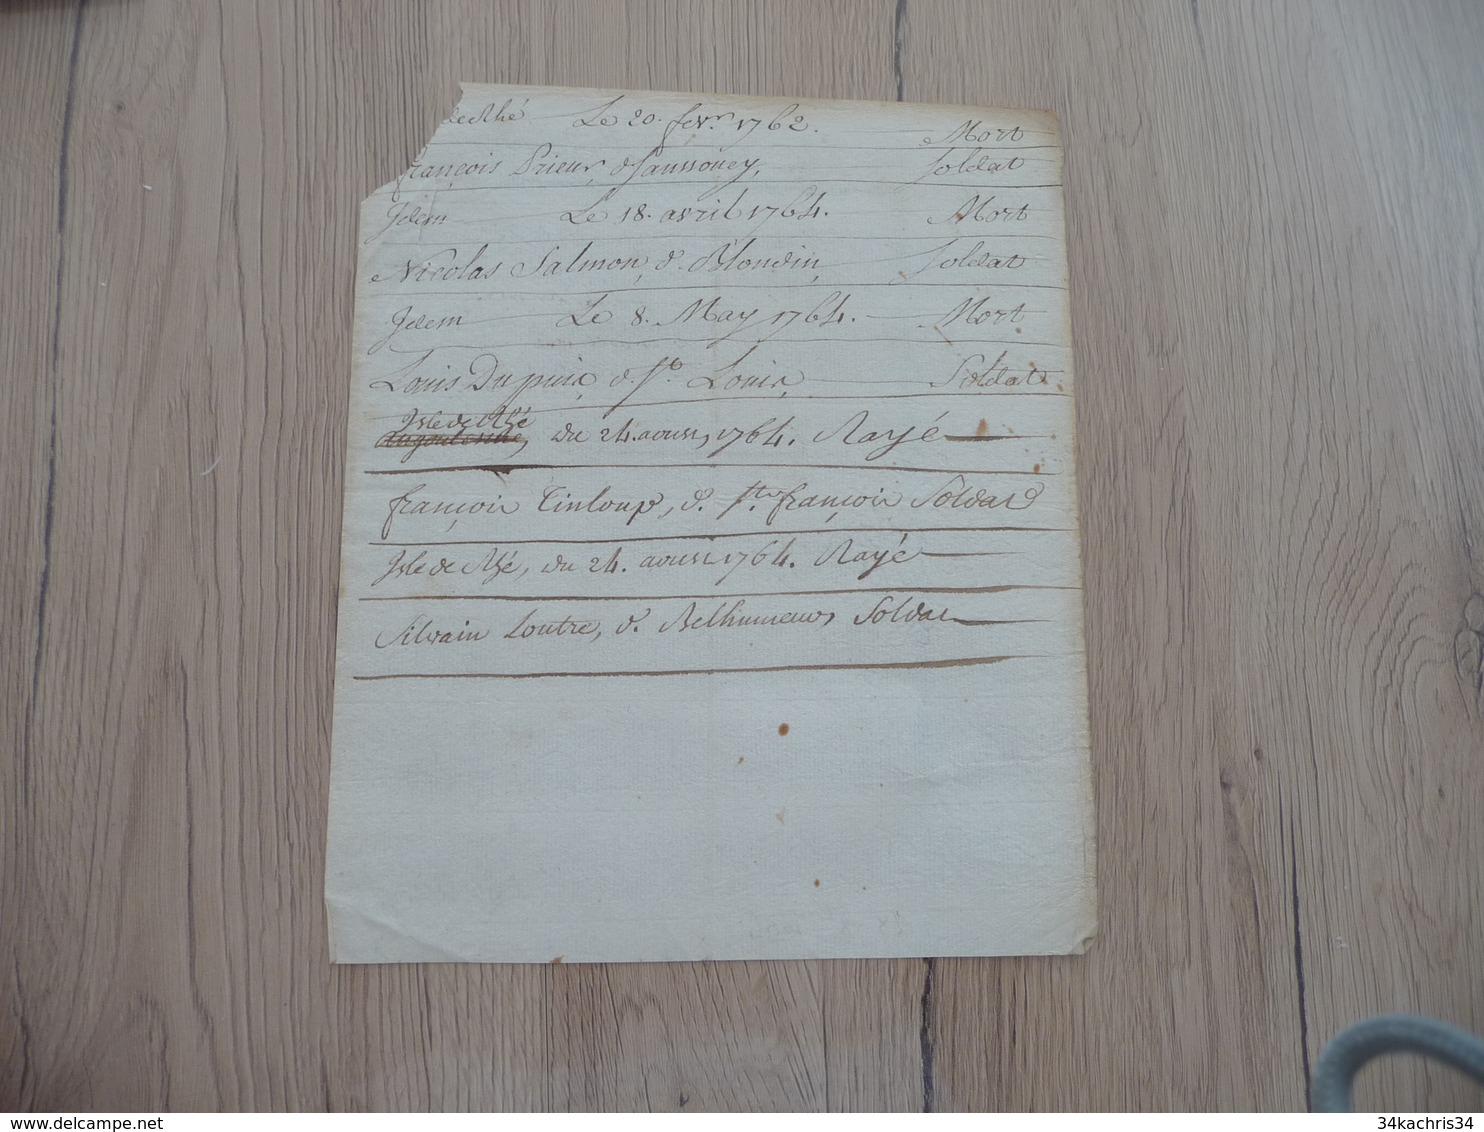 Pièce Signée Autographe Keyrsen Compagnie De Saint Marcel 1764 Liste Morts De Soldats - Documents